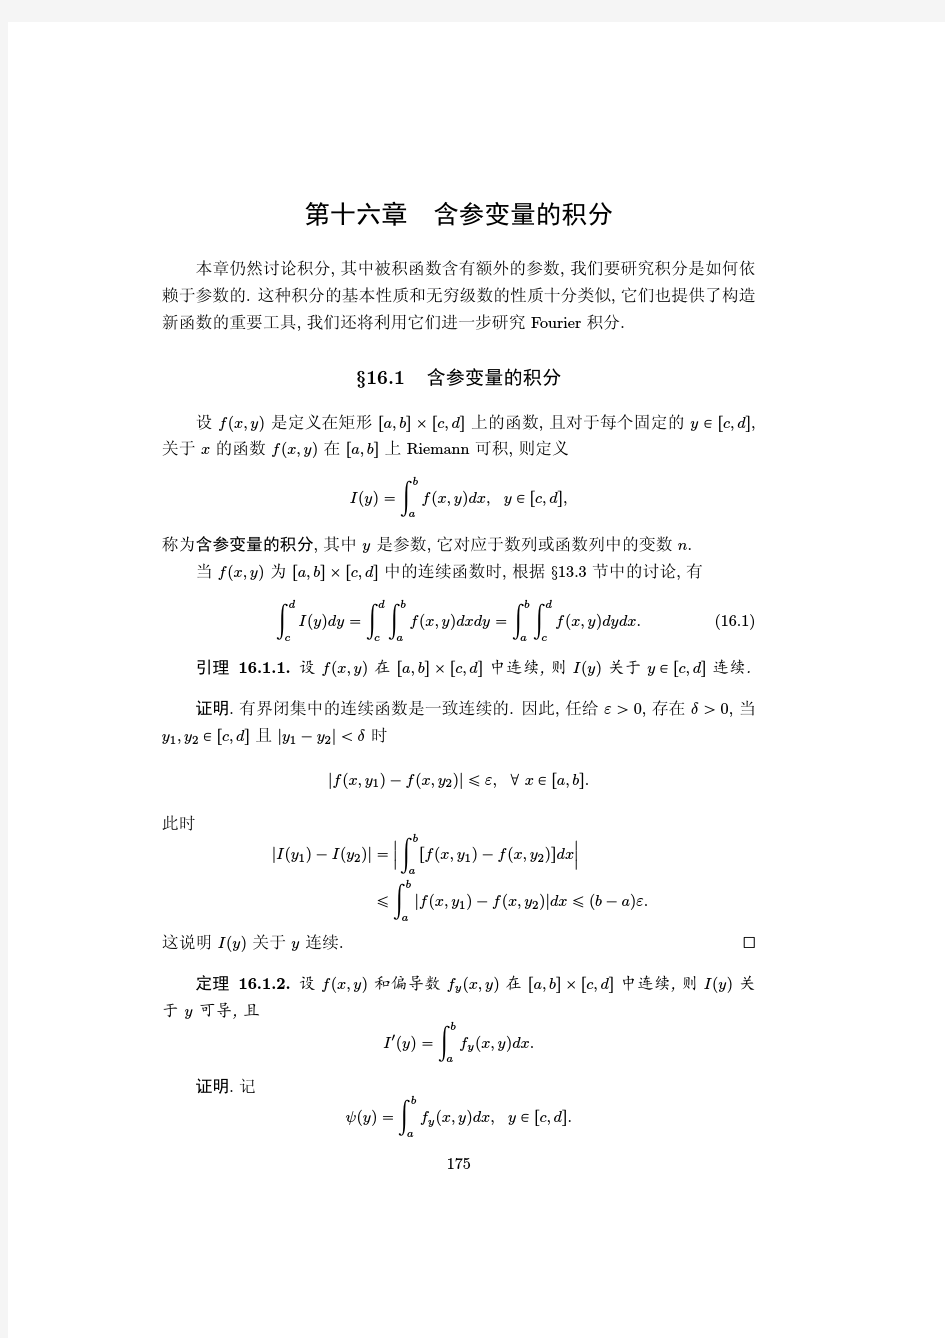 数学系微积分讲义稿(南京大学梅加强)